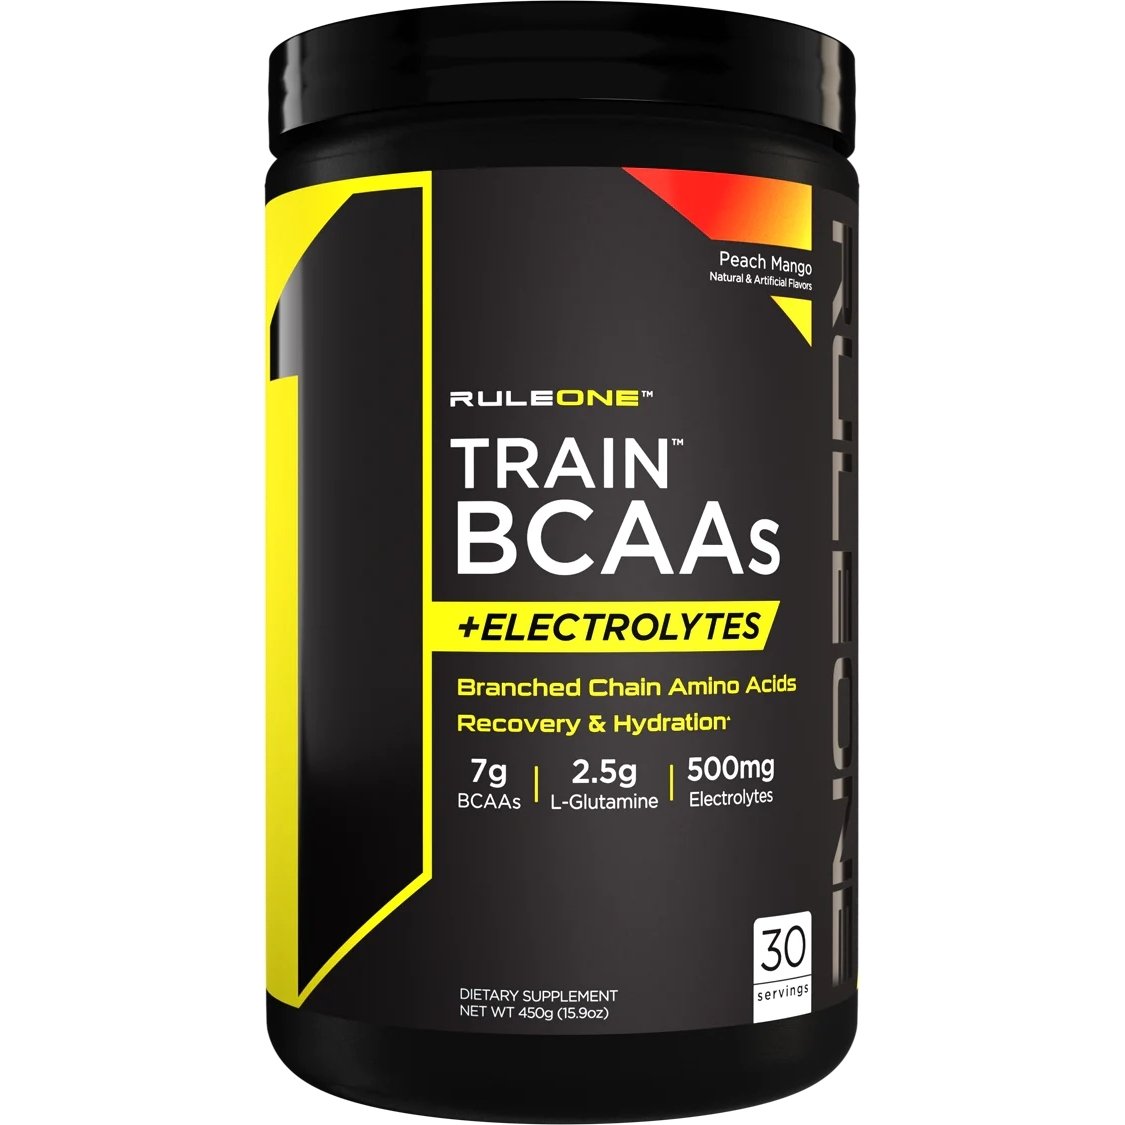 Аминокислота BCAA Rule 1 Train BCAAs + Electrolytes, 450 грамм Персик-манго,  ml, Rule One Proteins. BCAA. Weight Loss recovery Anti-catabolic properties Lean muscle mass 